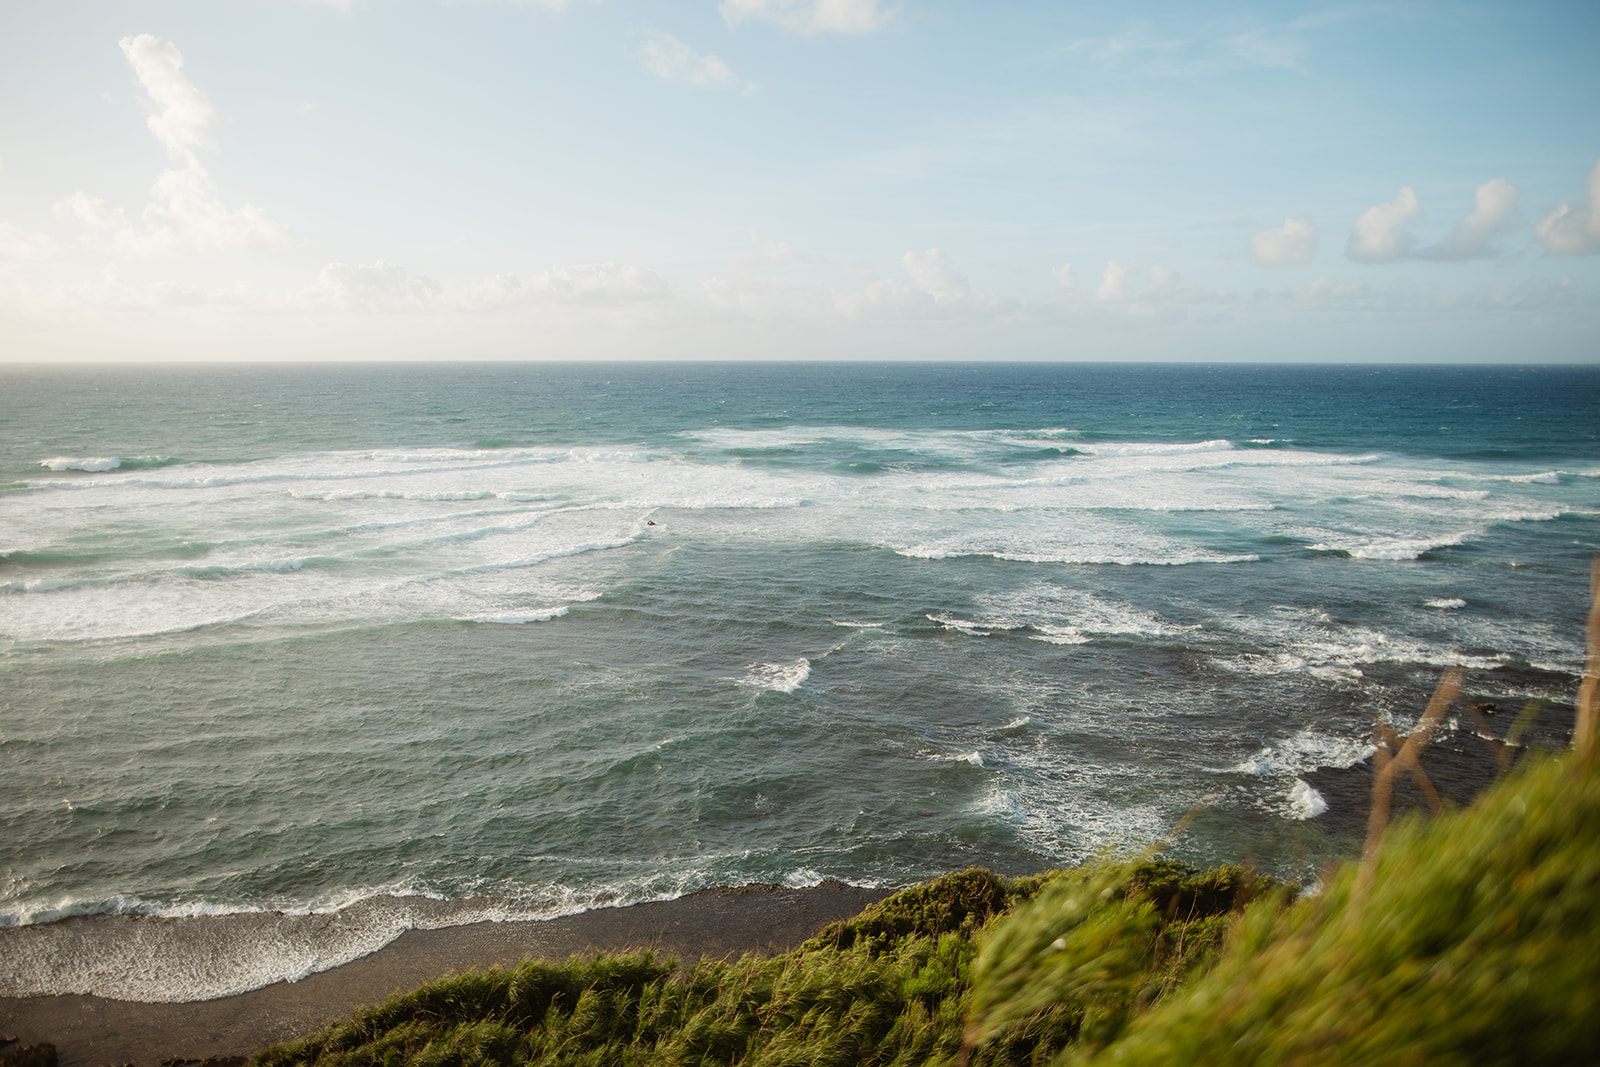 Kauai Shipwrecks beach cliff elopement